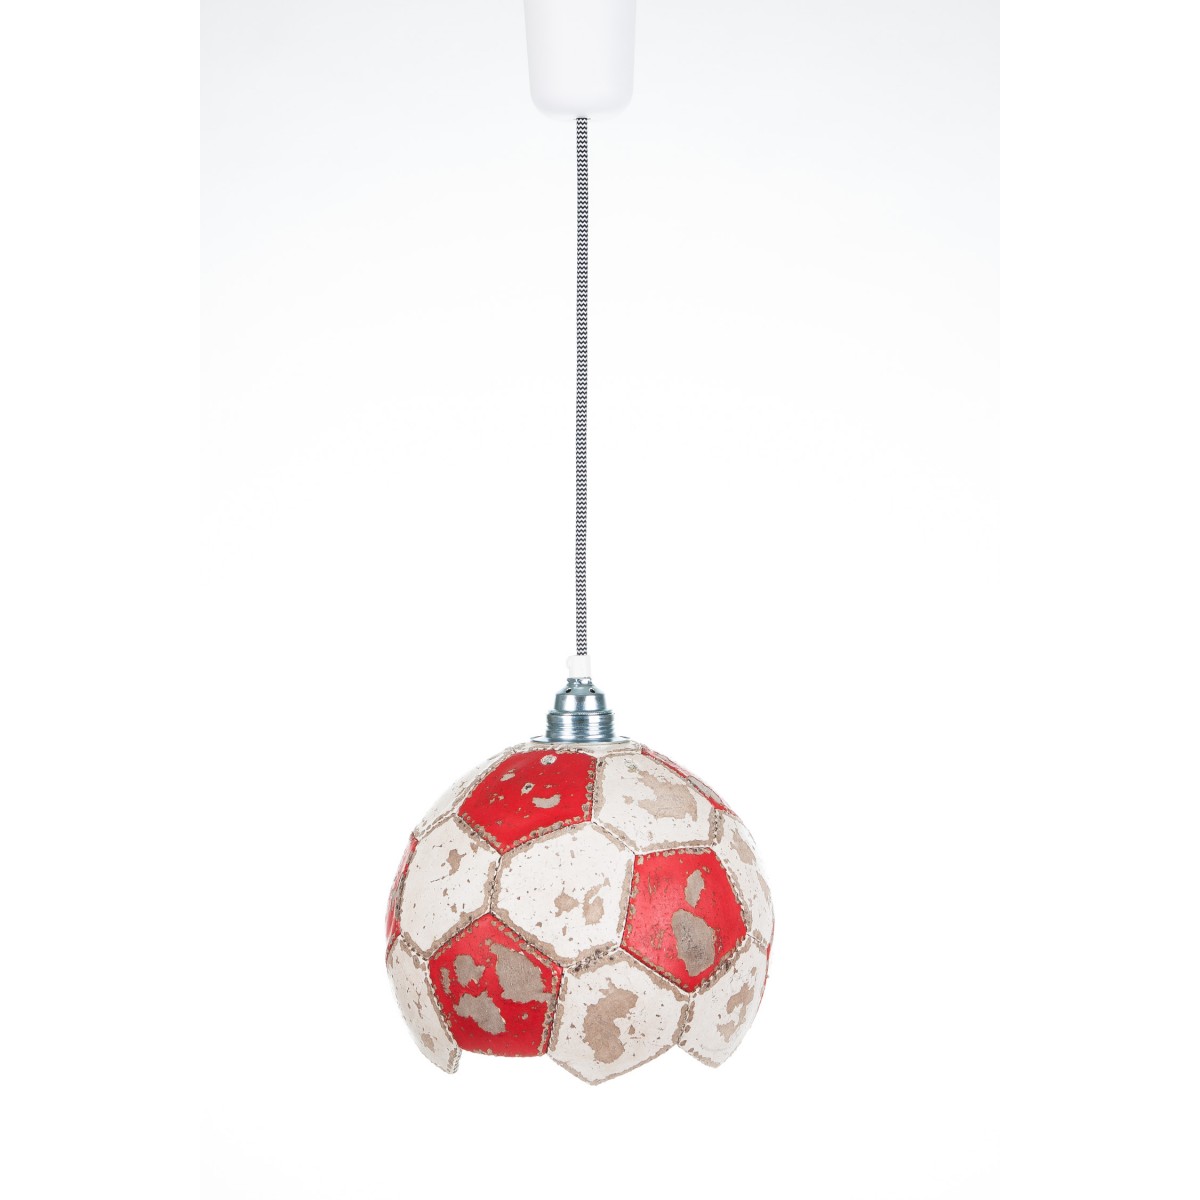 Karolchicks Fussball Lampe Upcycling